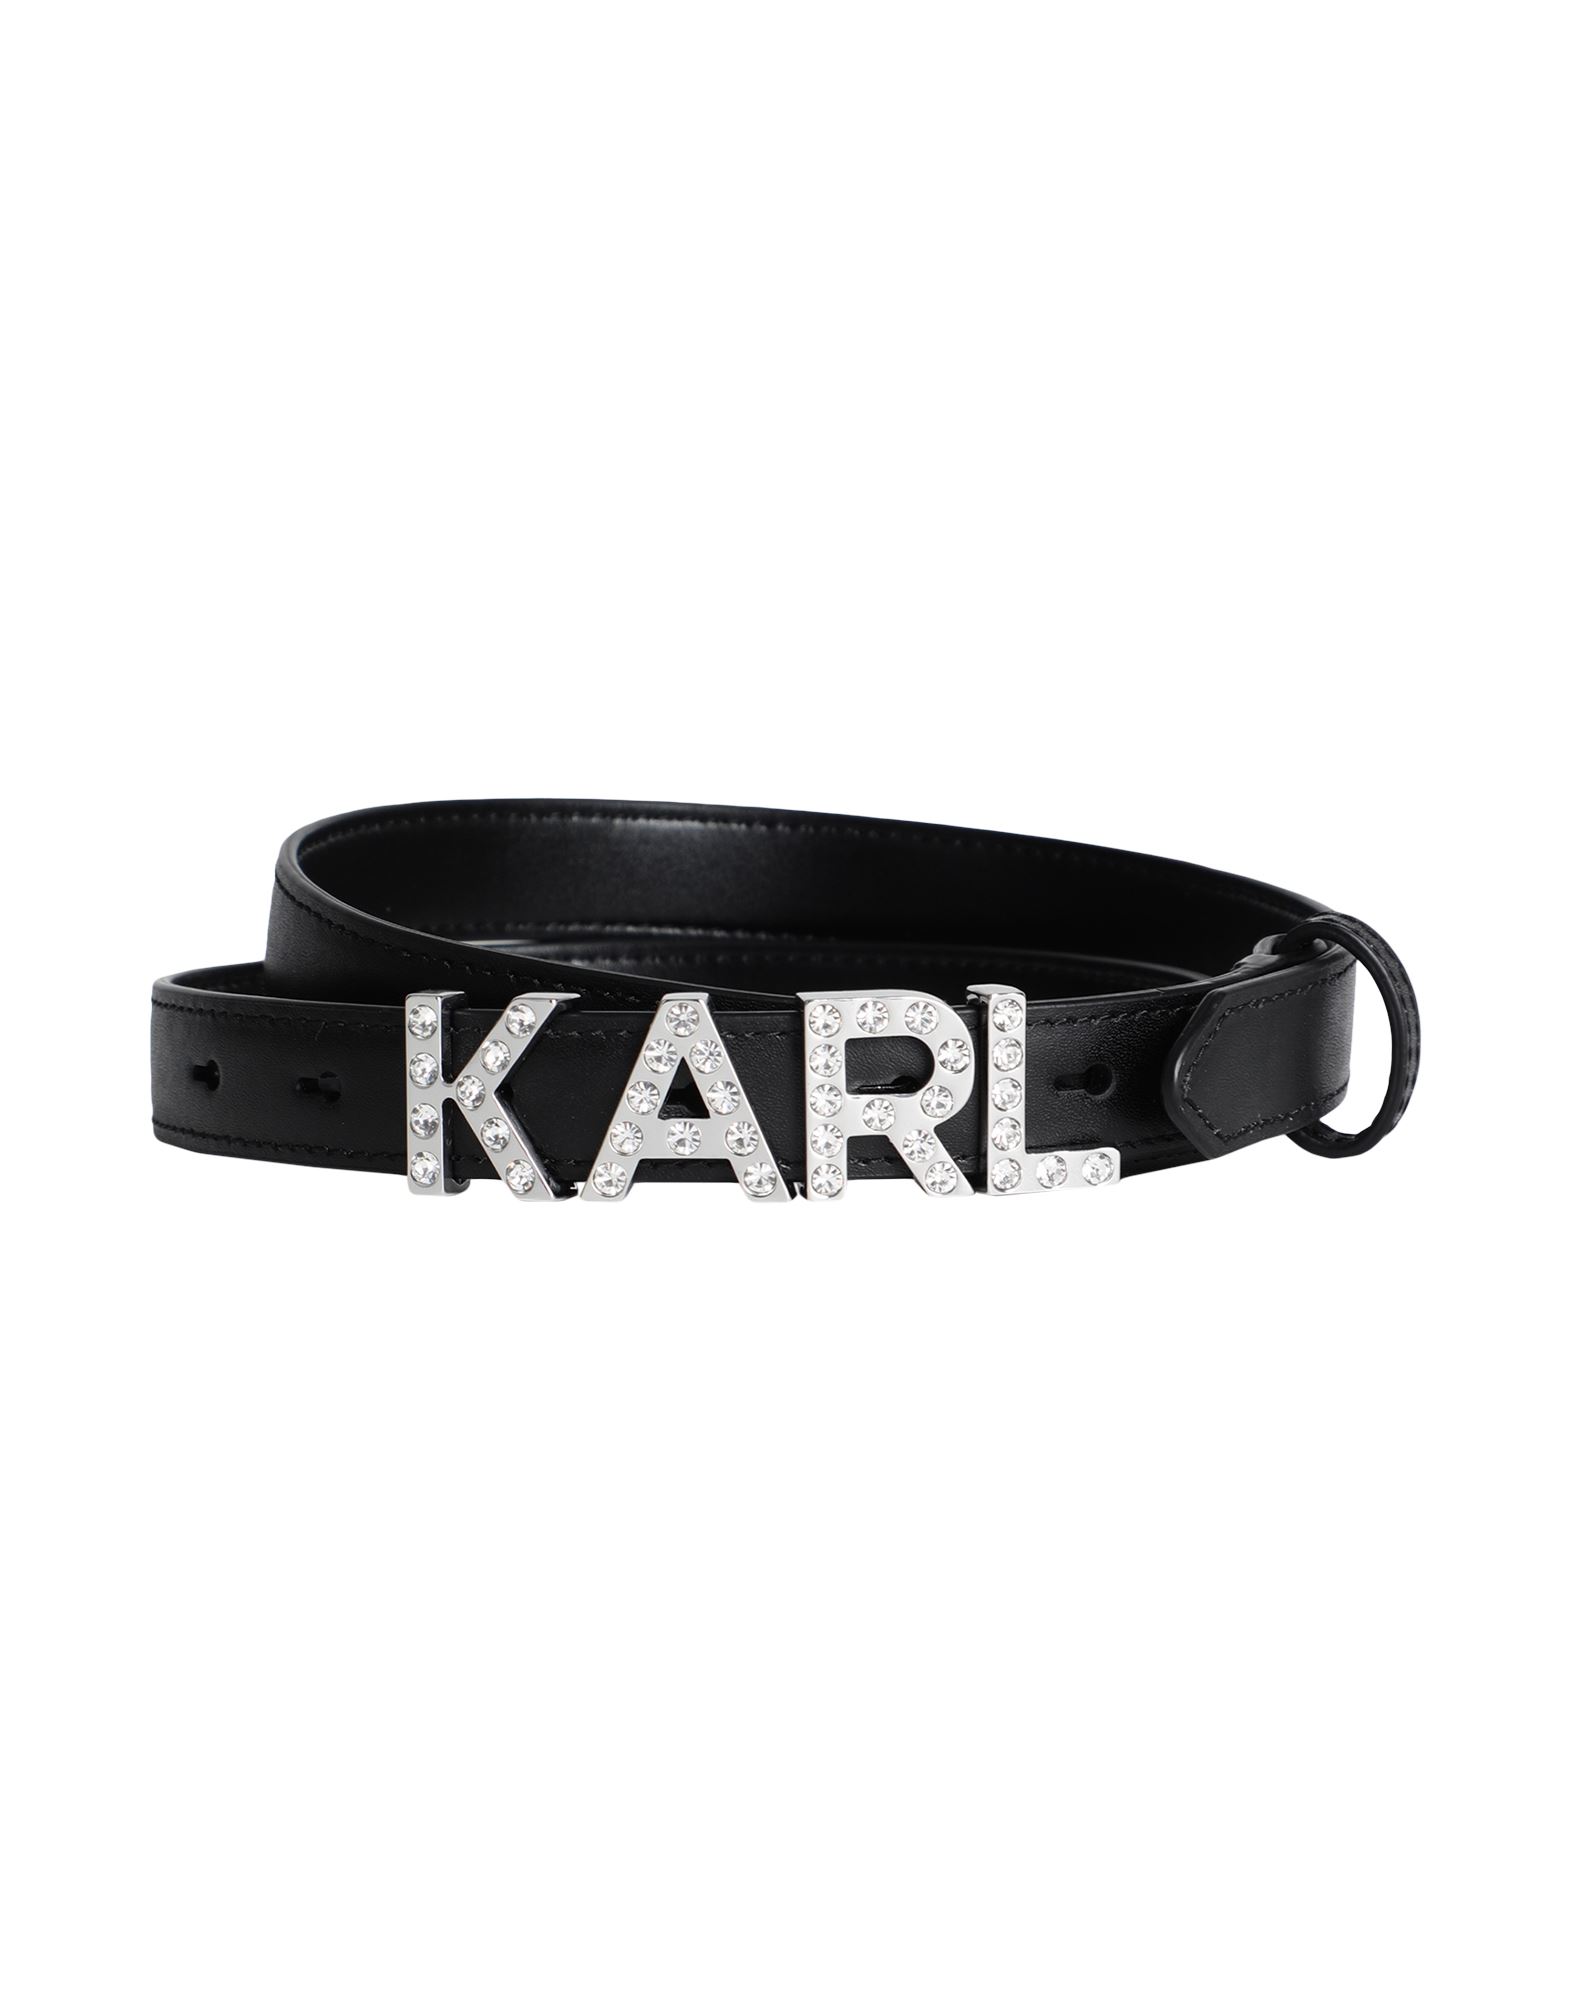 KARL LAGERFELD カールラガーフェルド レディース ベルト K/LETTERS RHINEST SMALL BELT ブラック